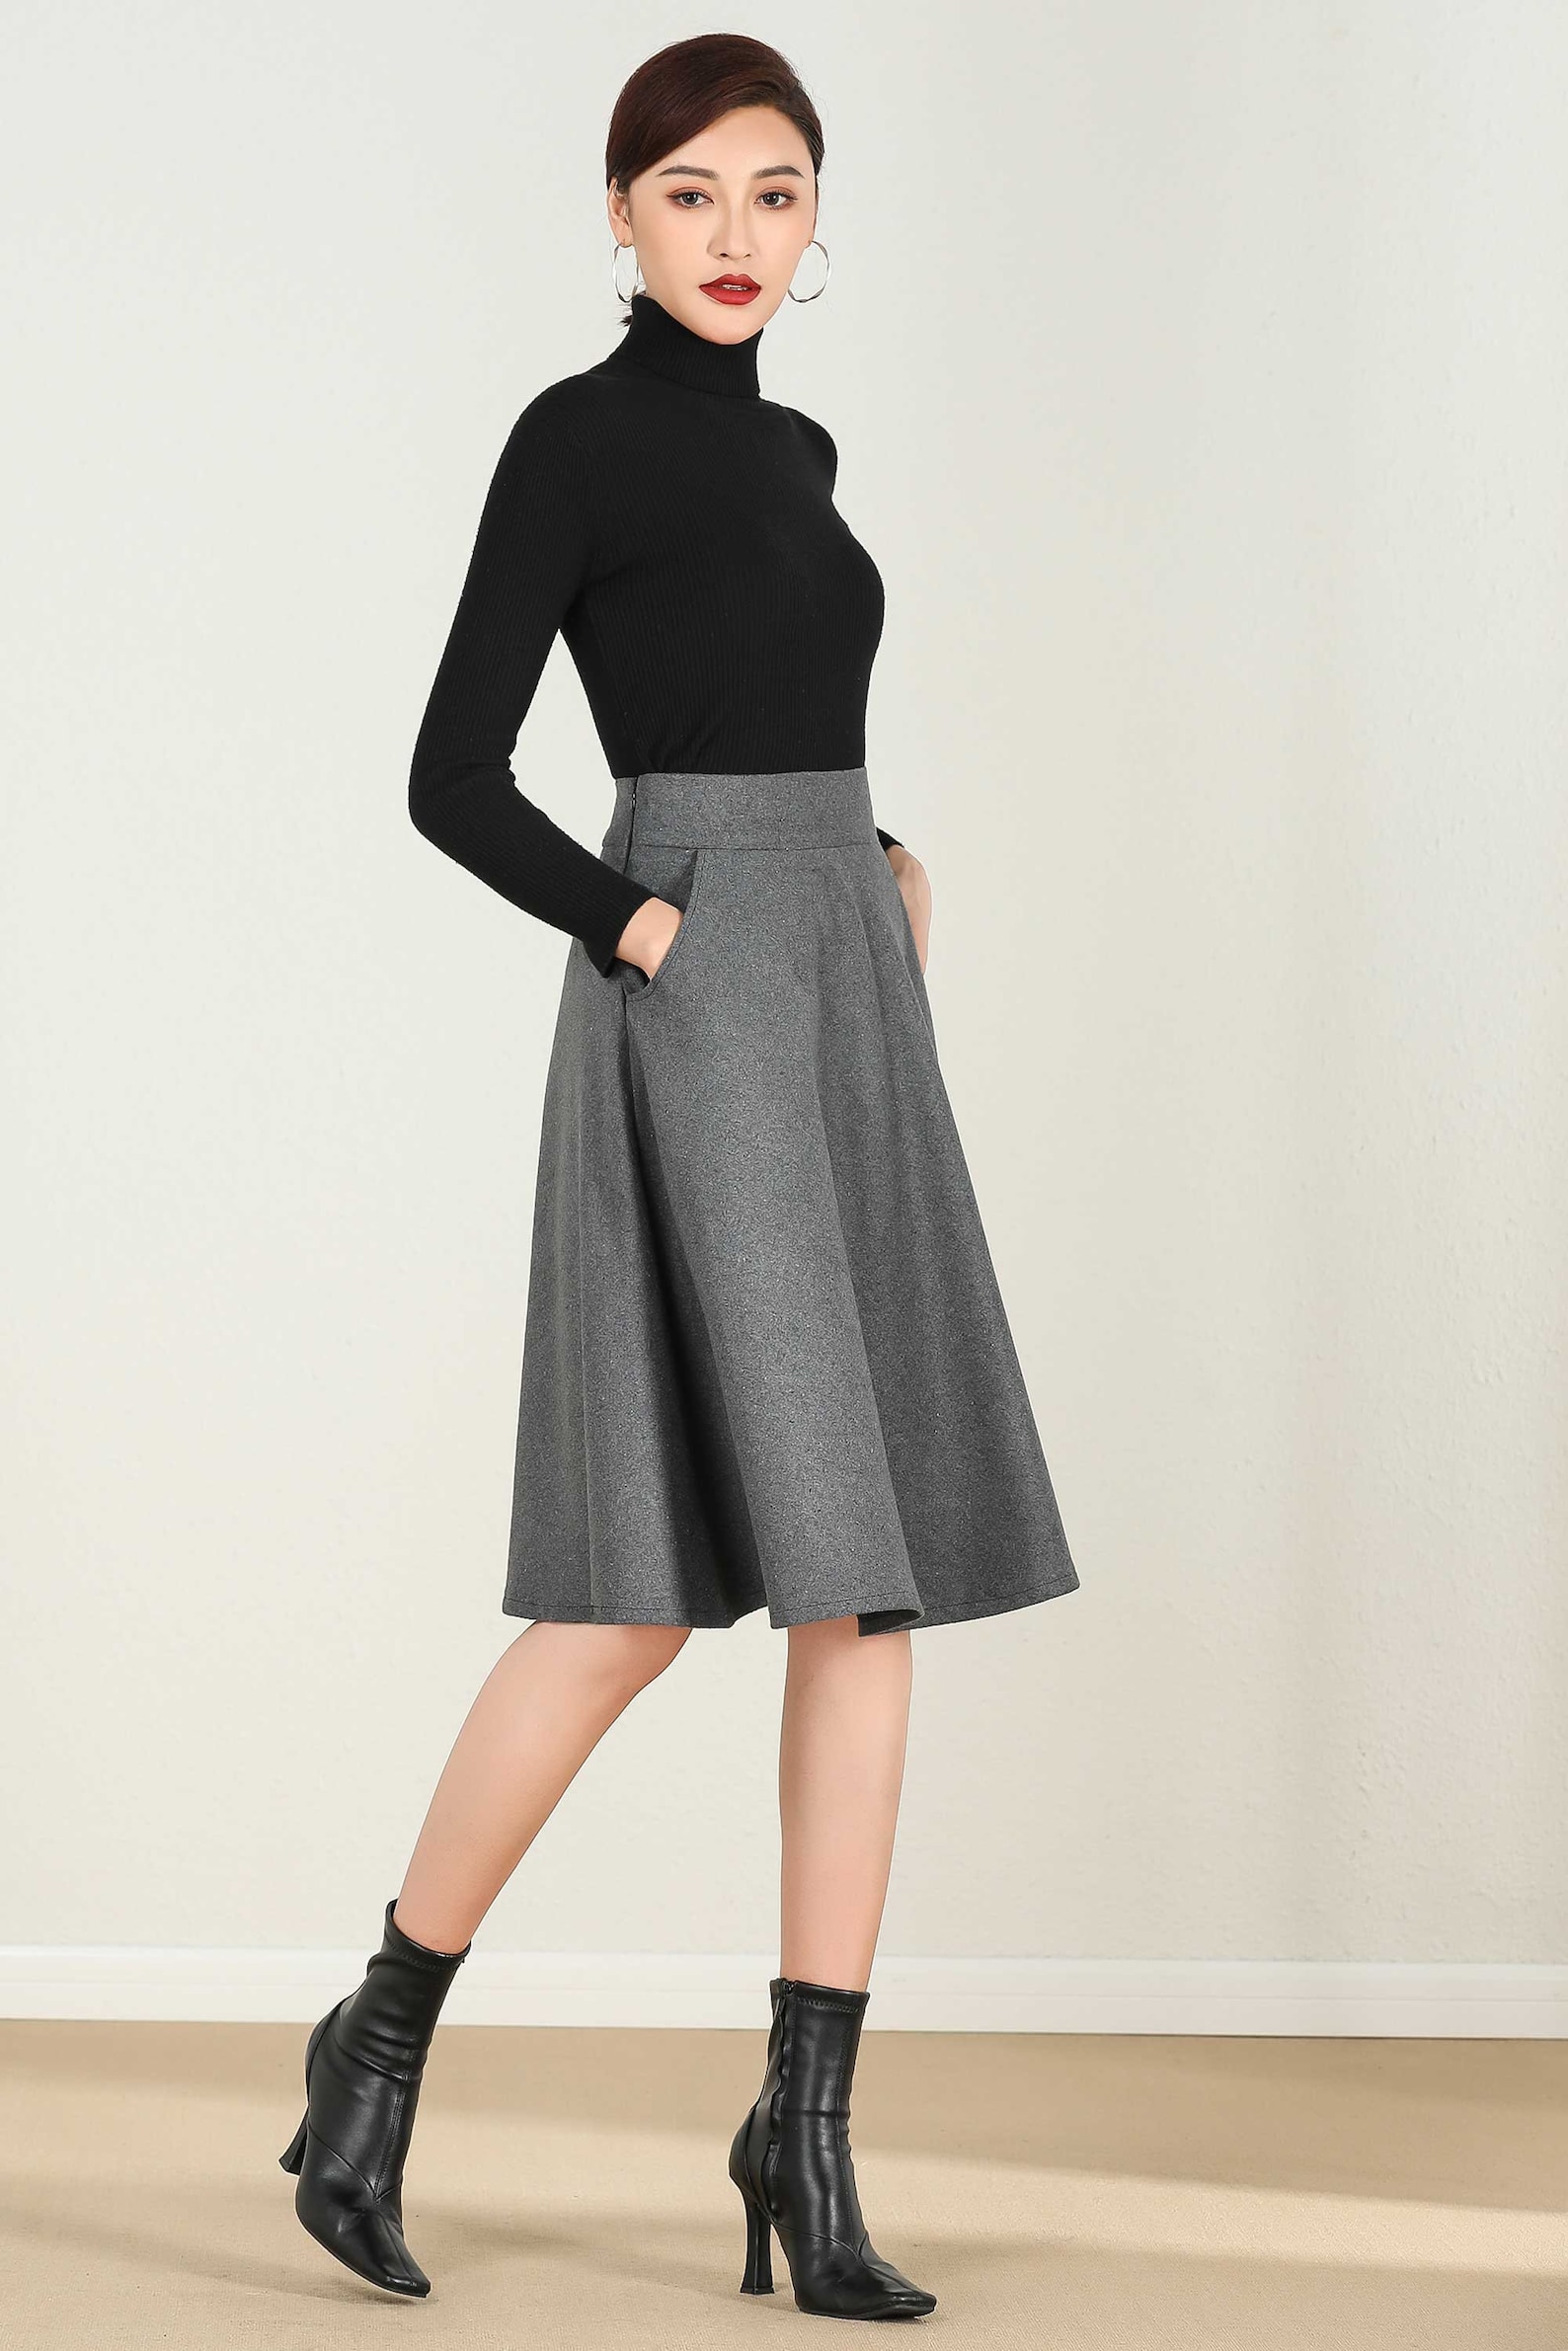 Short A Line Wool Skirt in Gray High Waist Skirt Midi Skirt | Etsy